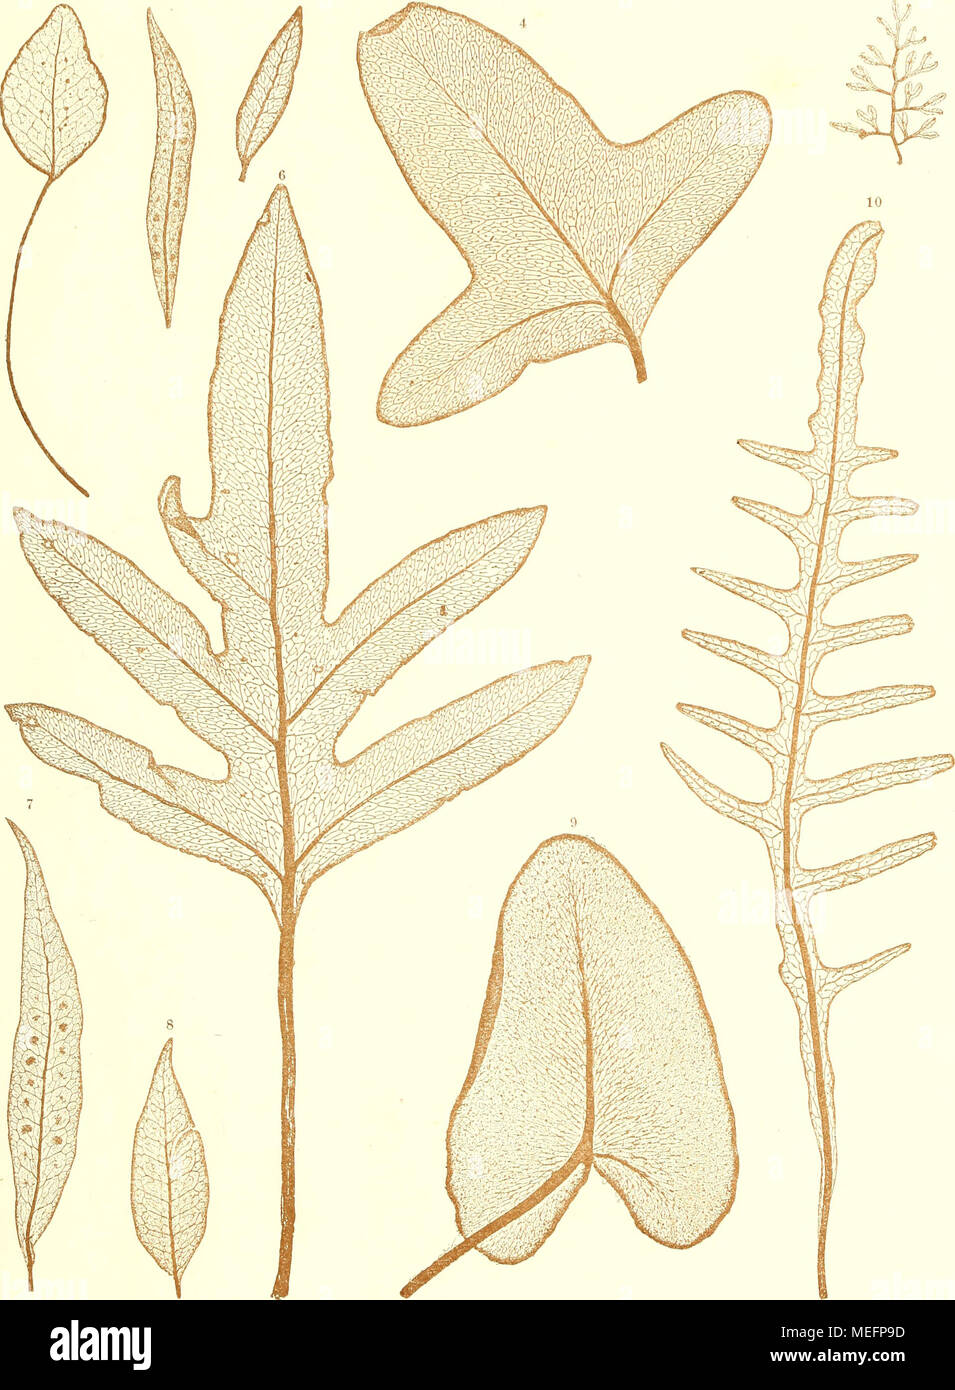 . Die farnkräuter der jetztwelt, zur untersuchung und bestimmung, der in den formationen der erdrinde eingeschlossenen überreste von vorweltlichen arten dieser ordnung nach dem flächen-skelet . 1. Pohjpodium oodes Kunze. 5. Gi/mnorjramme Kunzei Mo r. 2, 3, 7, 8. Polypodium salicifolium Willd. 6. rohjpodium Billardißri M. B r. 4. Pohjpodmm, Phymatoden Linn. 9. Gijmnogramme m/jiltala Ett. 10. Polypodium puslu/attiiii F ov at. Natliraelbatdruck. Aus der k. k- Hot*- und 6t.ia(8dru.-kerei. Stock Photo